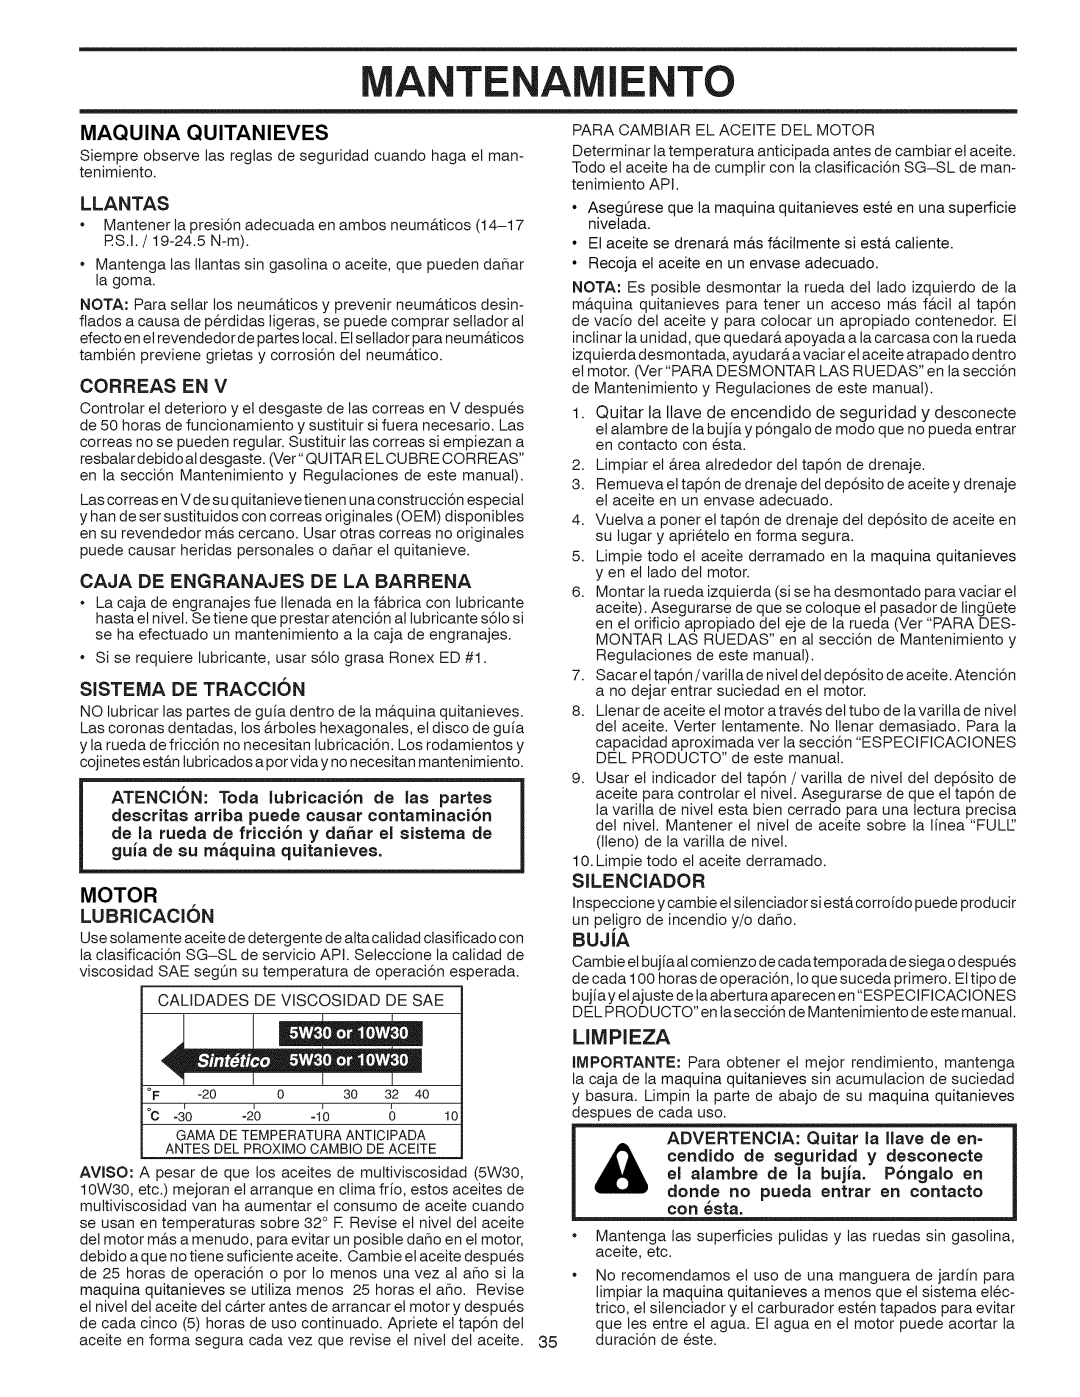 Craftsman 917.881064 owner manual Ante A To, Maquina Quitanieves, Limpieza, Llantas, Sistema De Traccion, MOTOR LUBRICAClON 